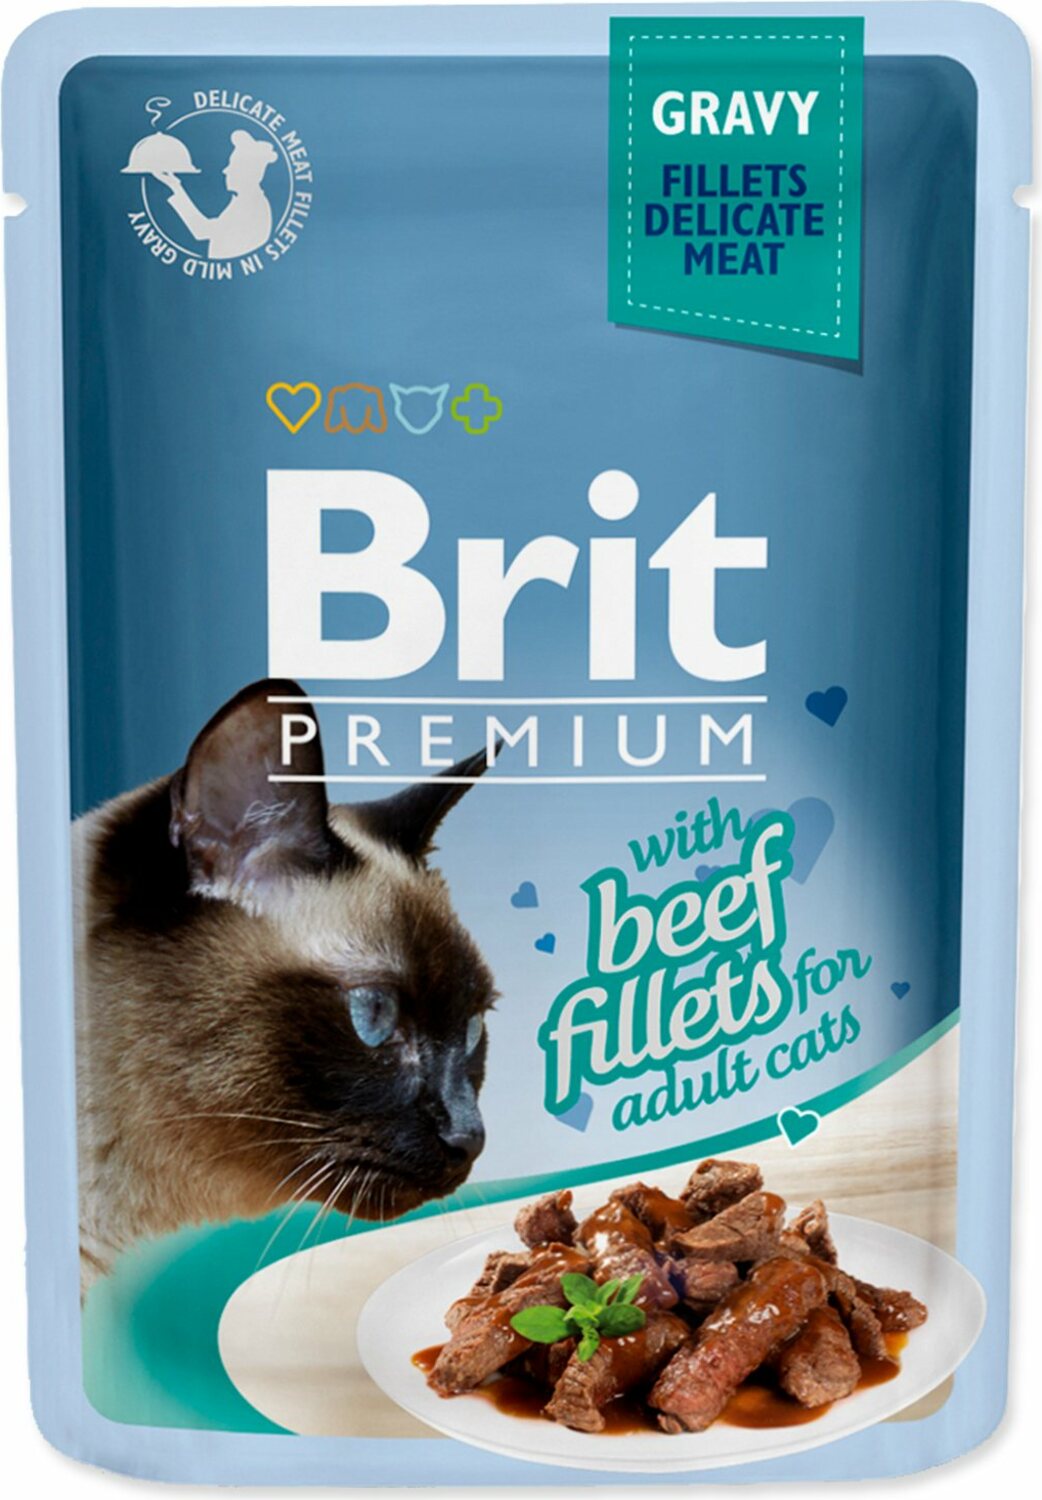 Kapsička Brit Premium Cat hovězí, filety v omáčce 85g